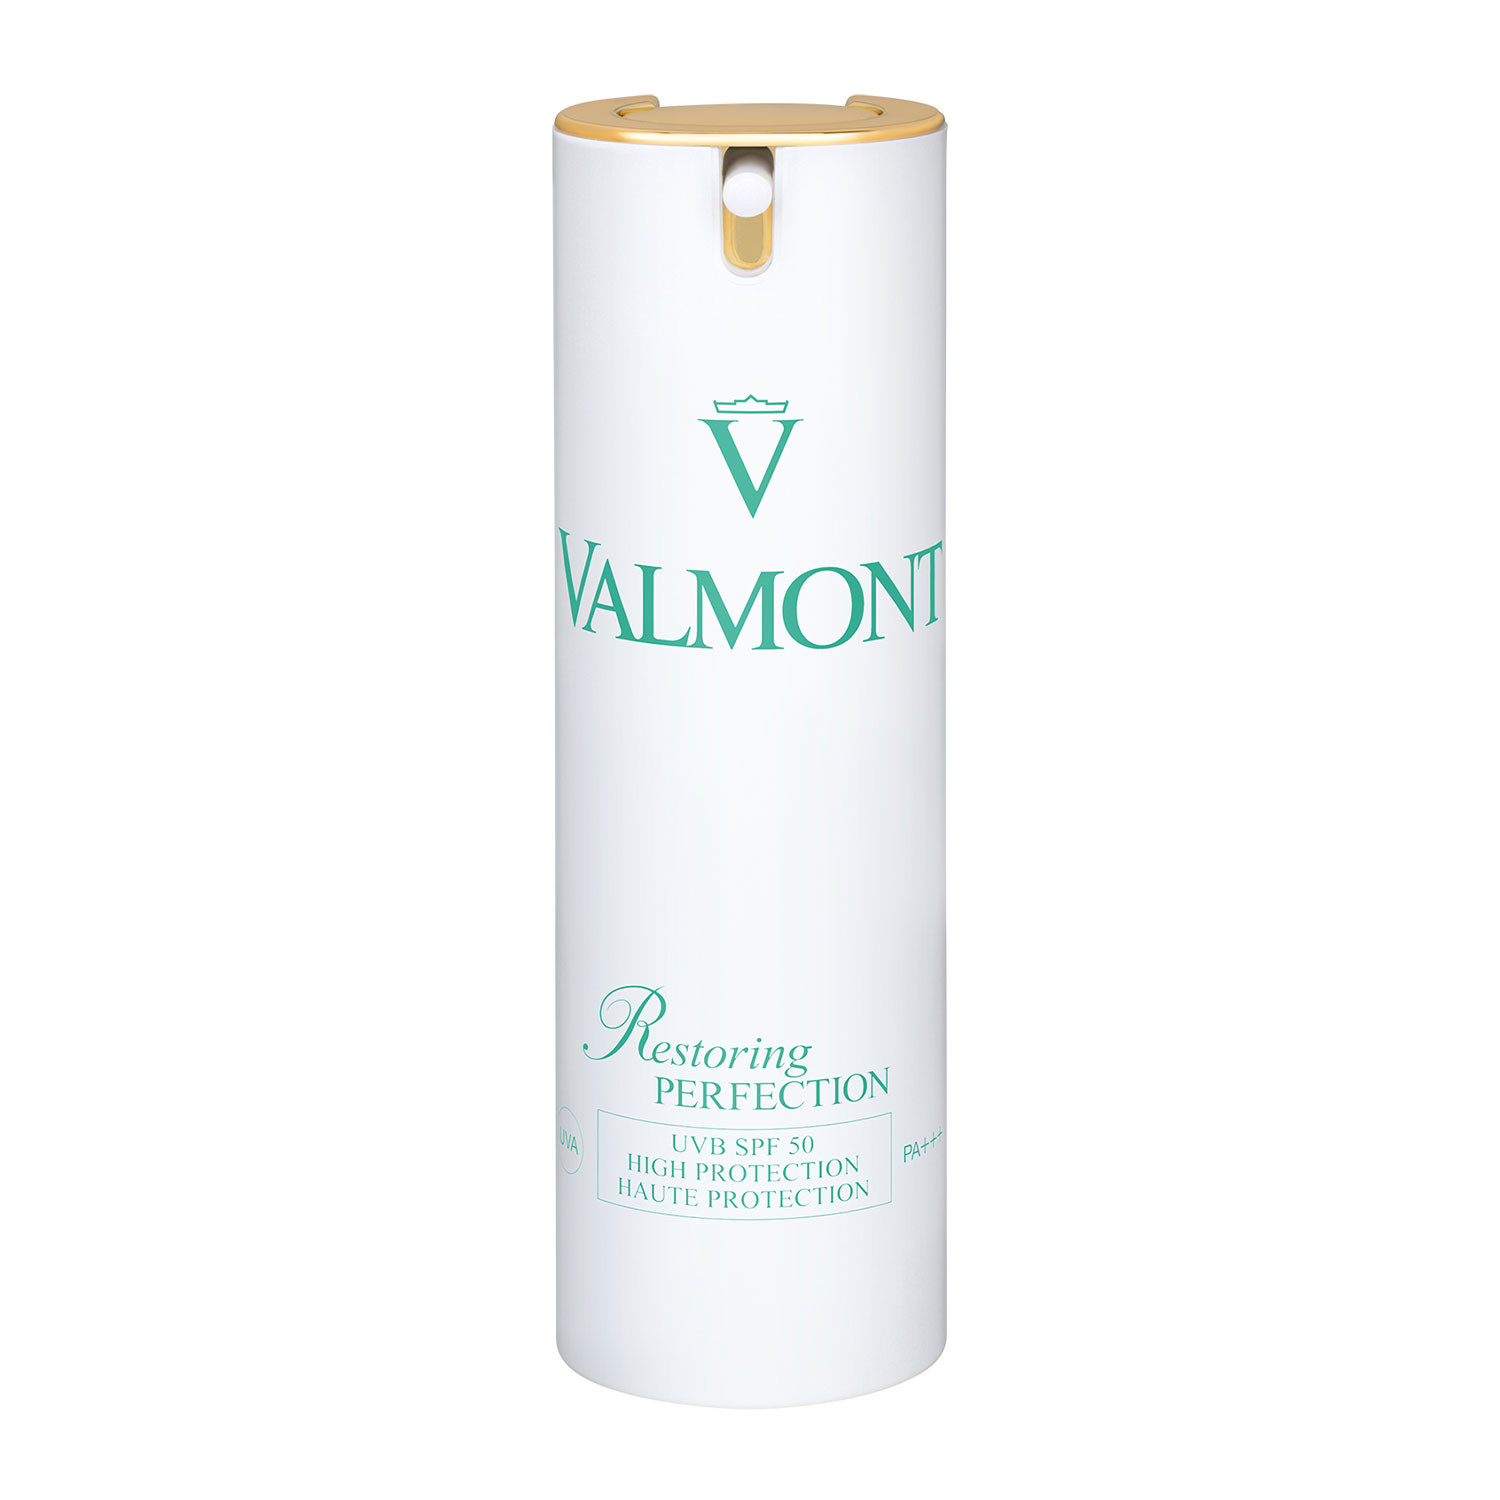 Відгуки про Valmont Restoring Perfection SPF 50 Восстанавливающий крем «Преимущество»